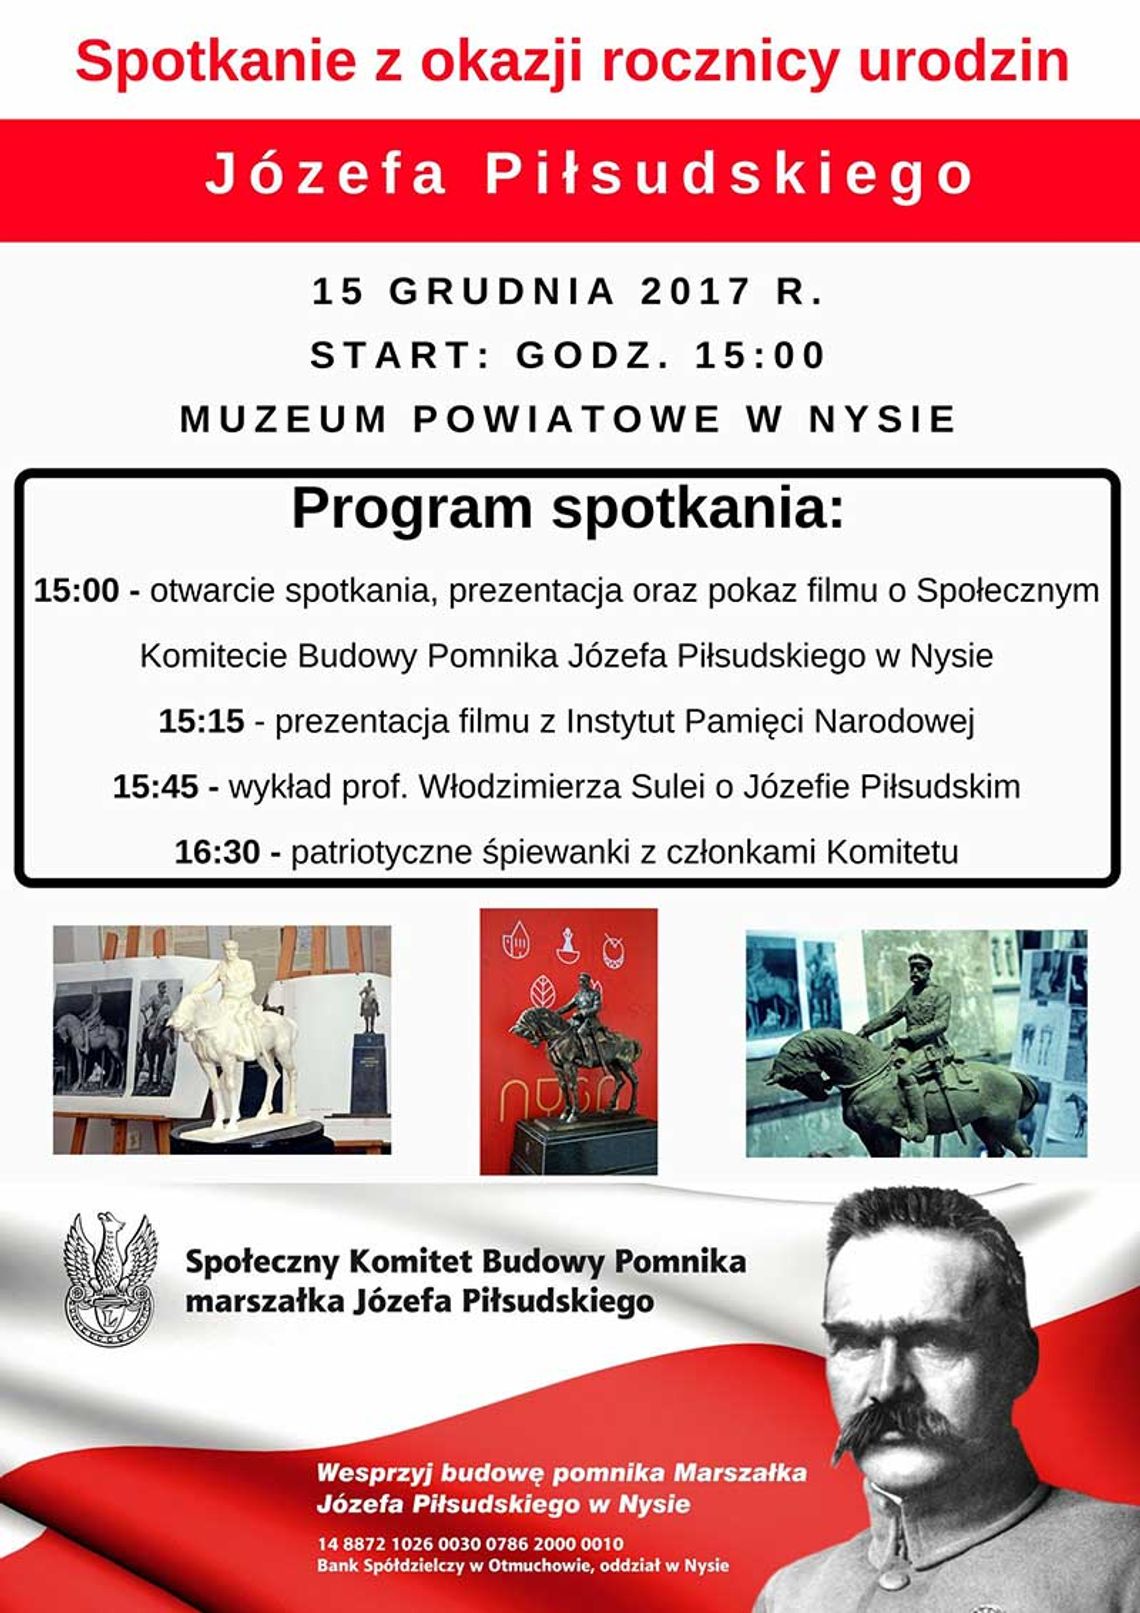 Spotkanie z okazji urodzin Józefa Piłsudskiego